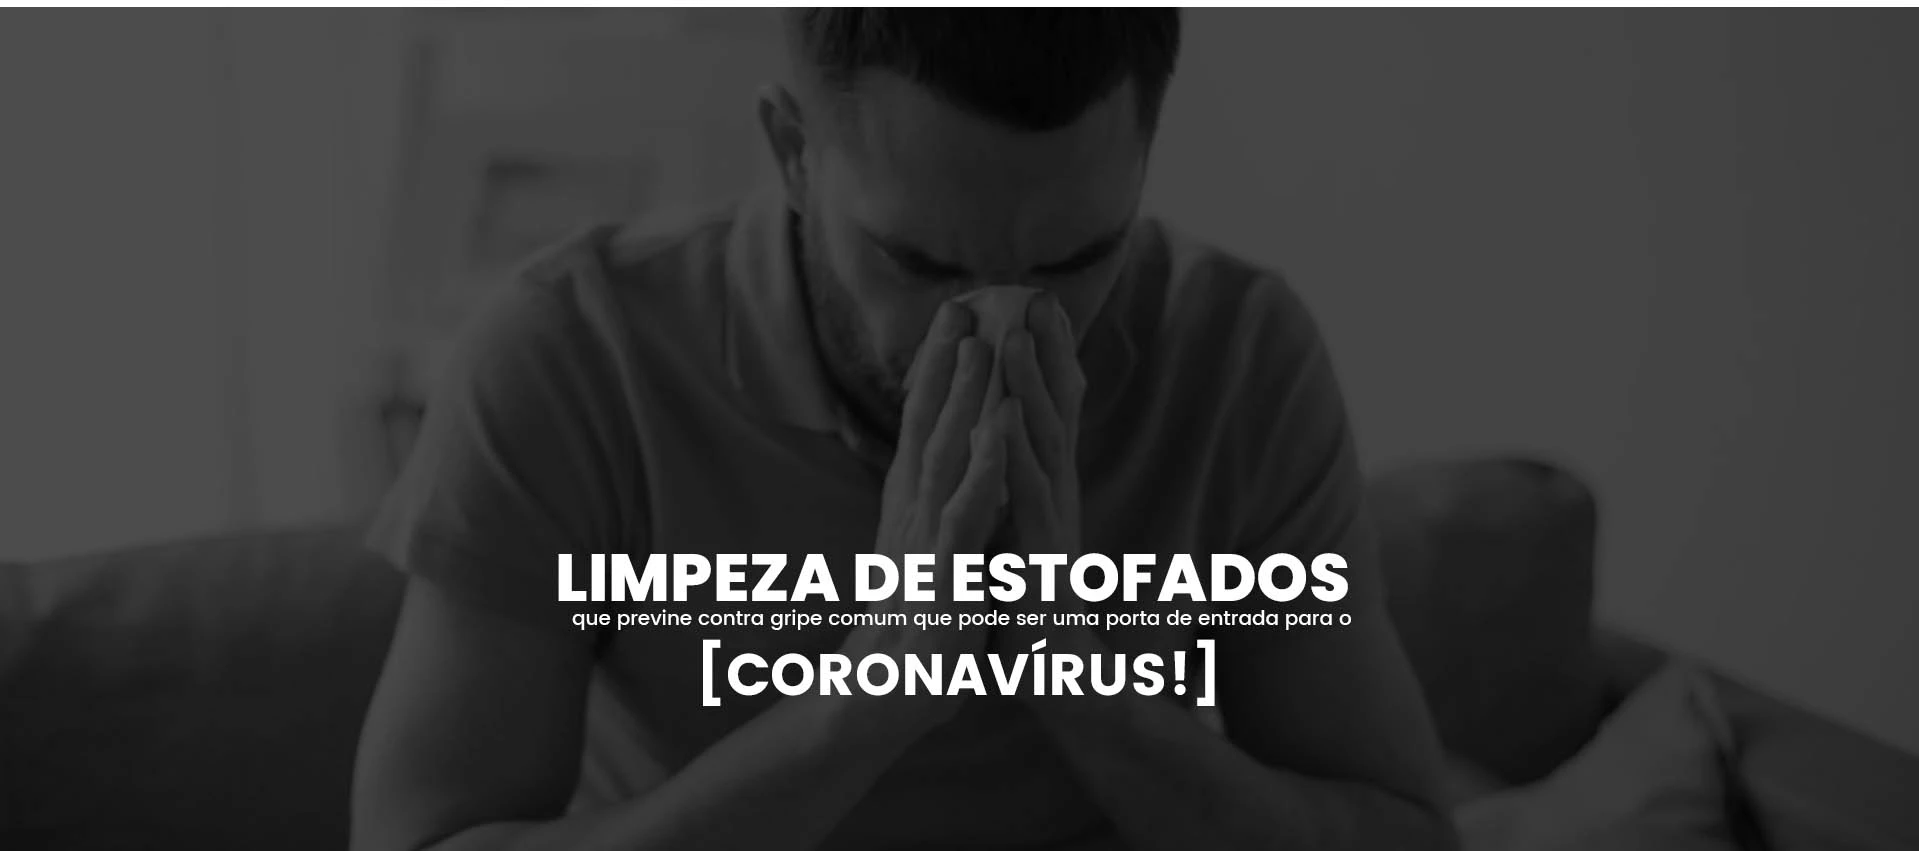 Limpeza de estofados que previne contra gripe comum que pode ser uma porta de entrada para o coronavírus!